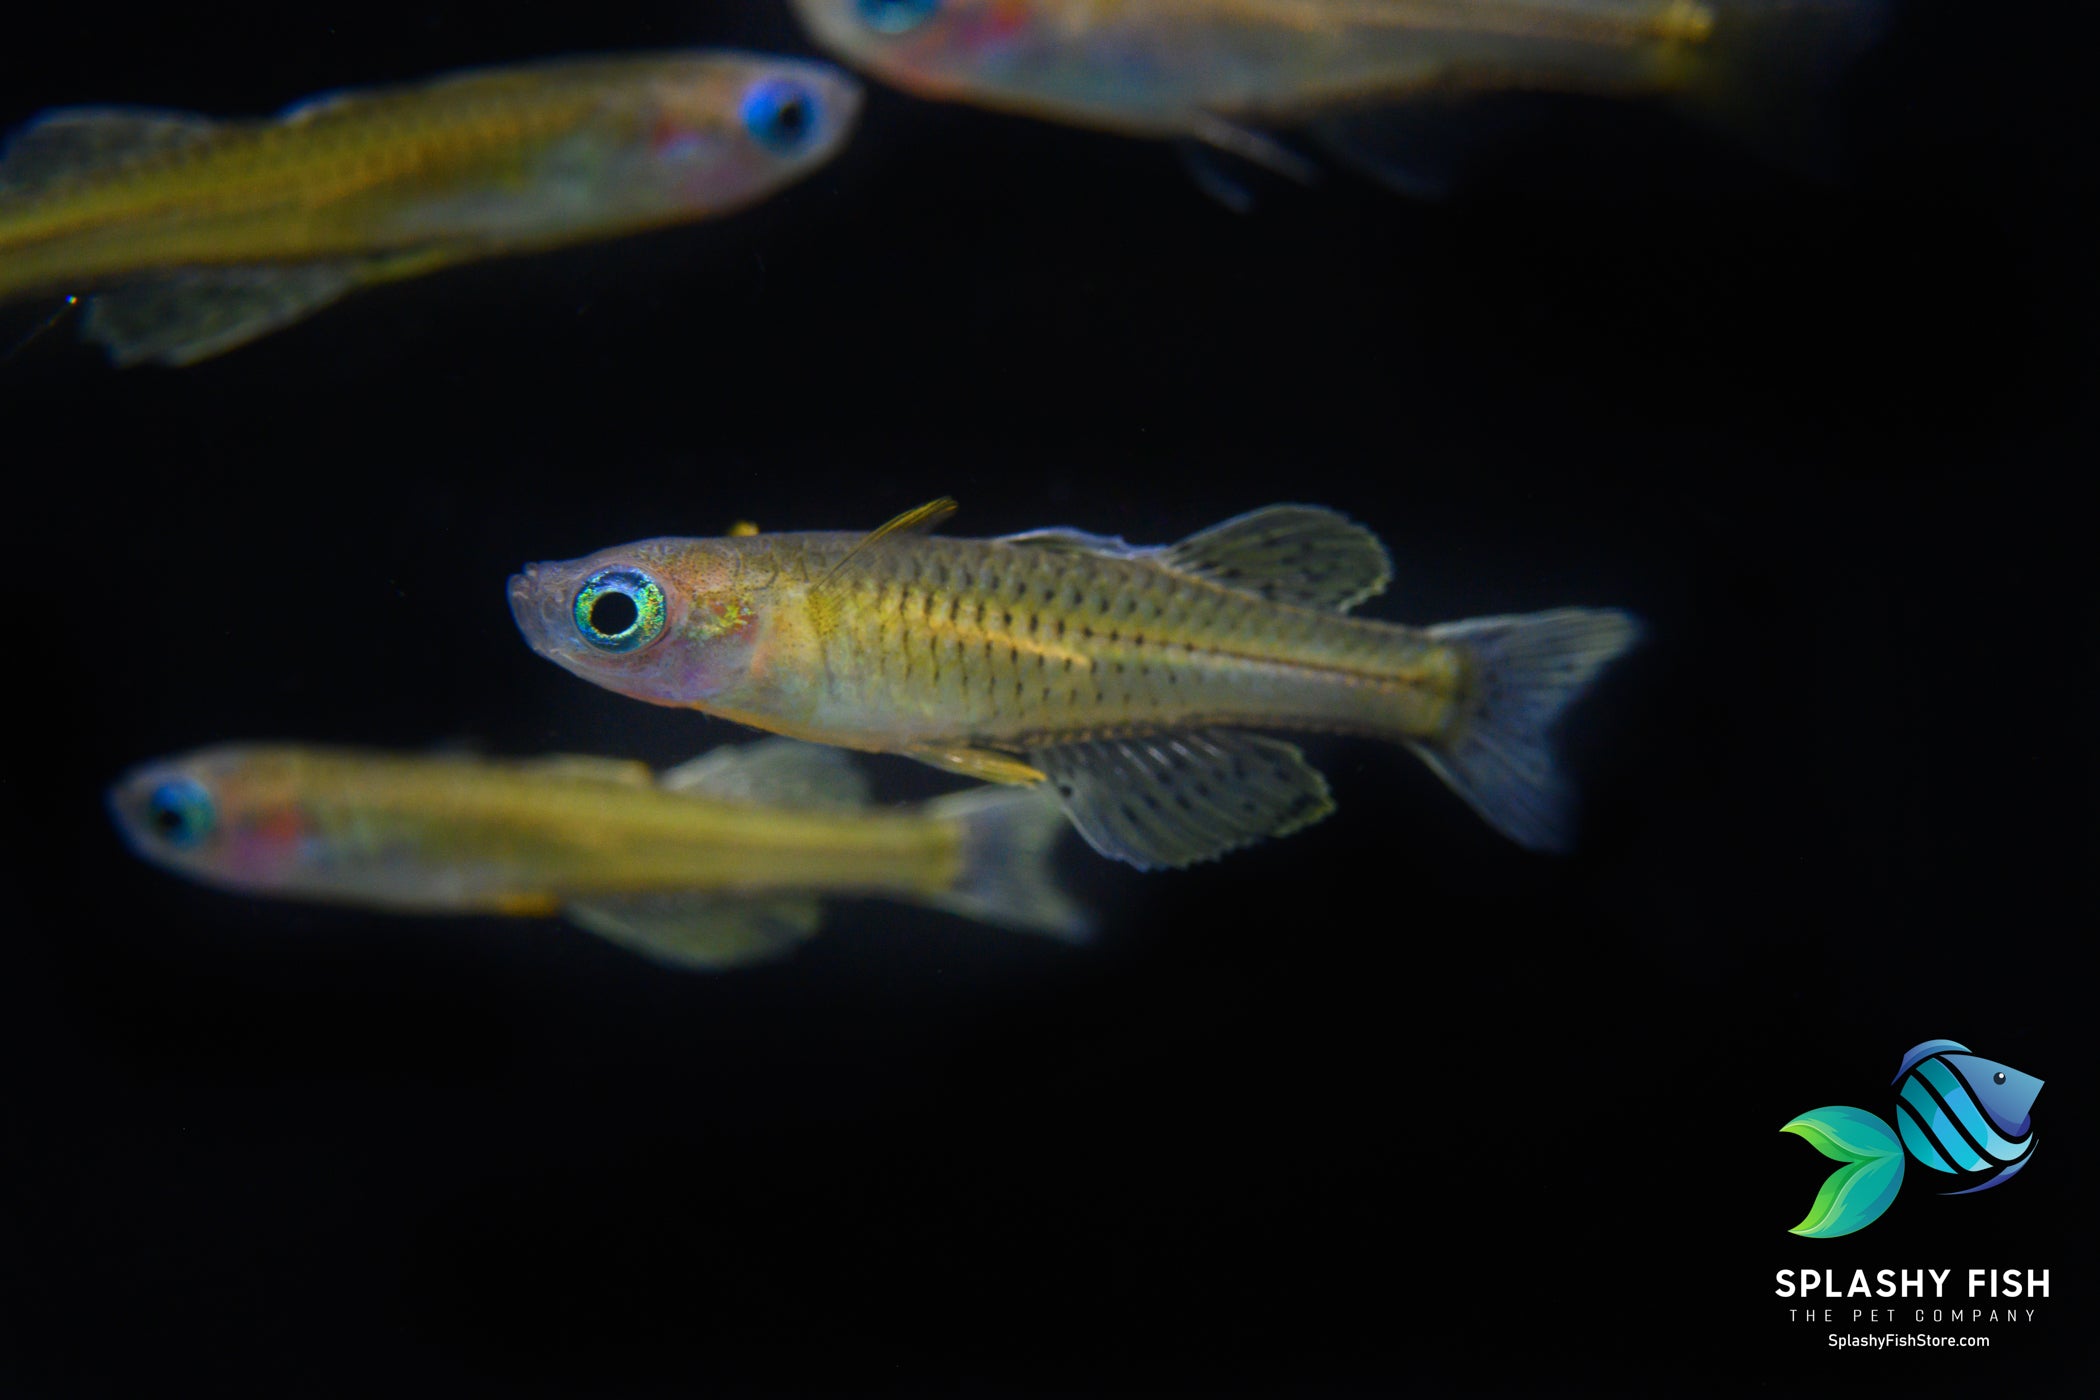 Male Pseudomugil luminatus in a freshwater aquarium fish tank